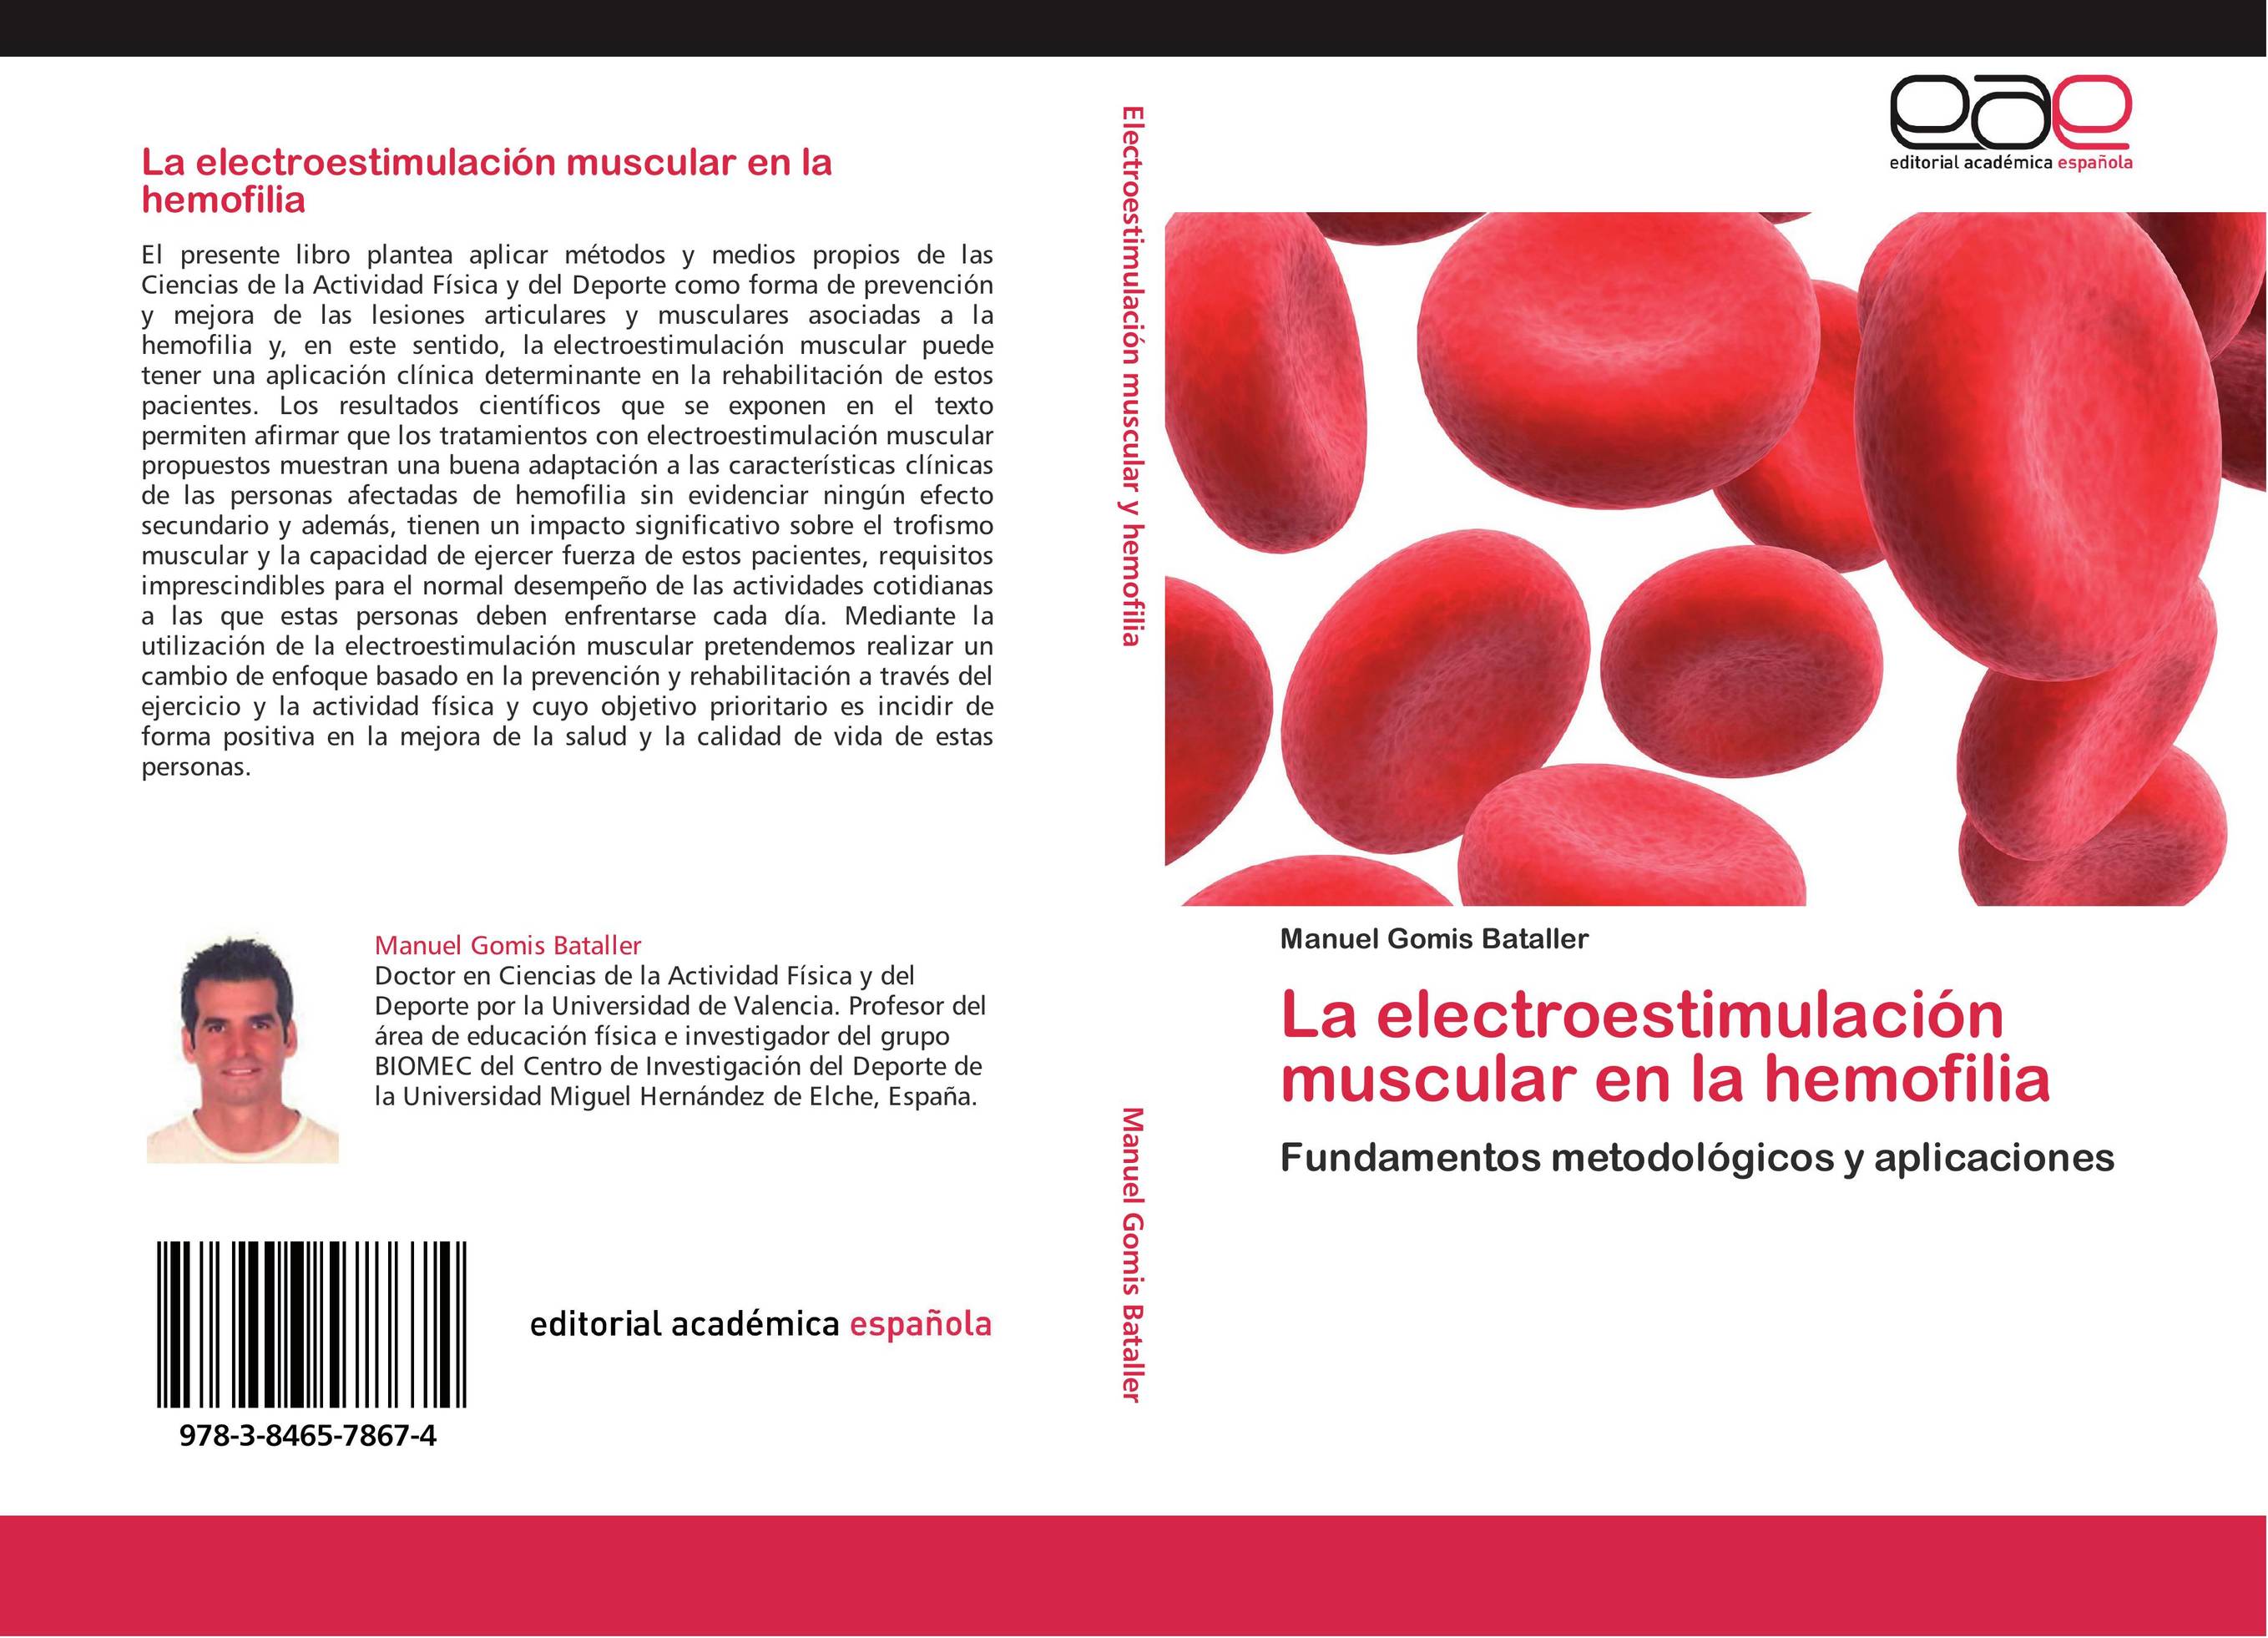 La electroestimulación muscular en la hemofilia